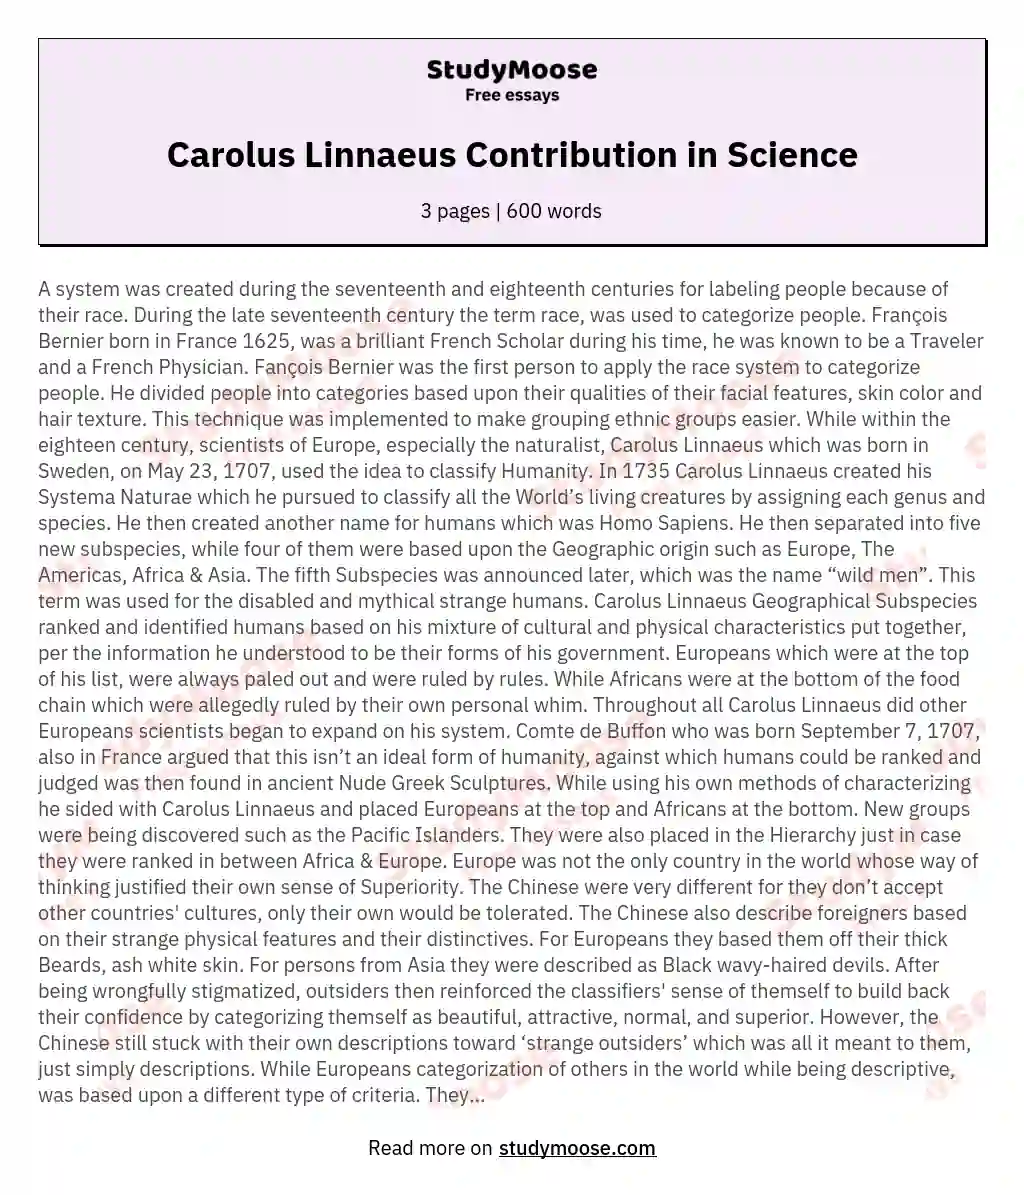 Carolus Linnaeus Contribution in Science essay